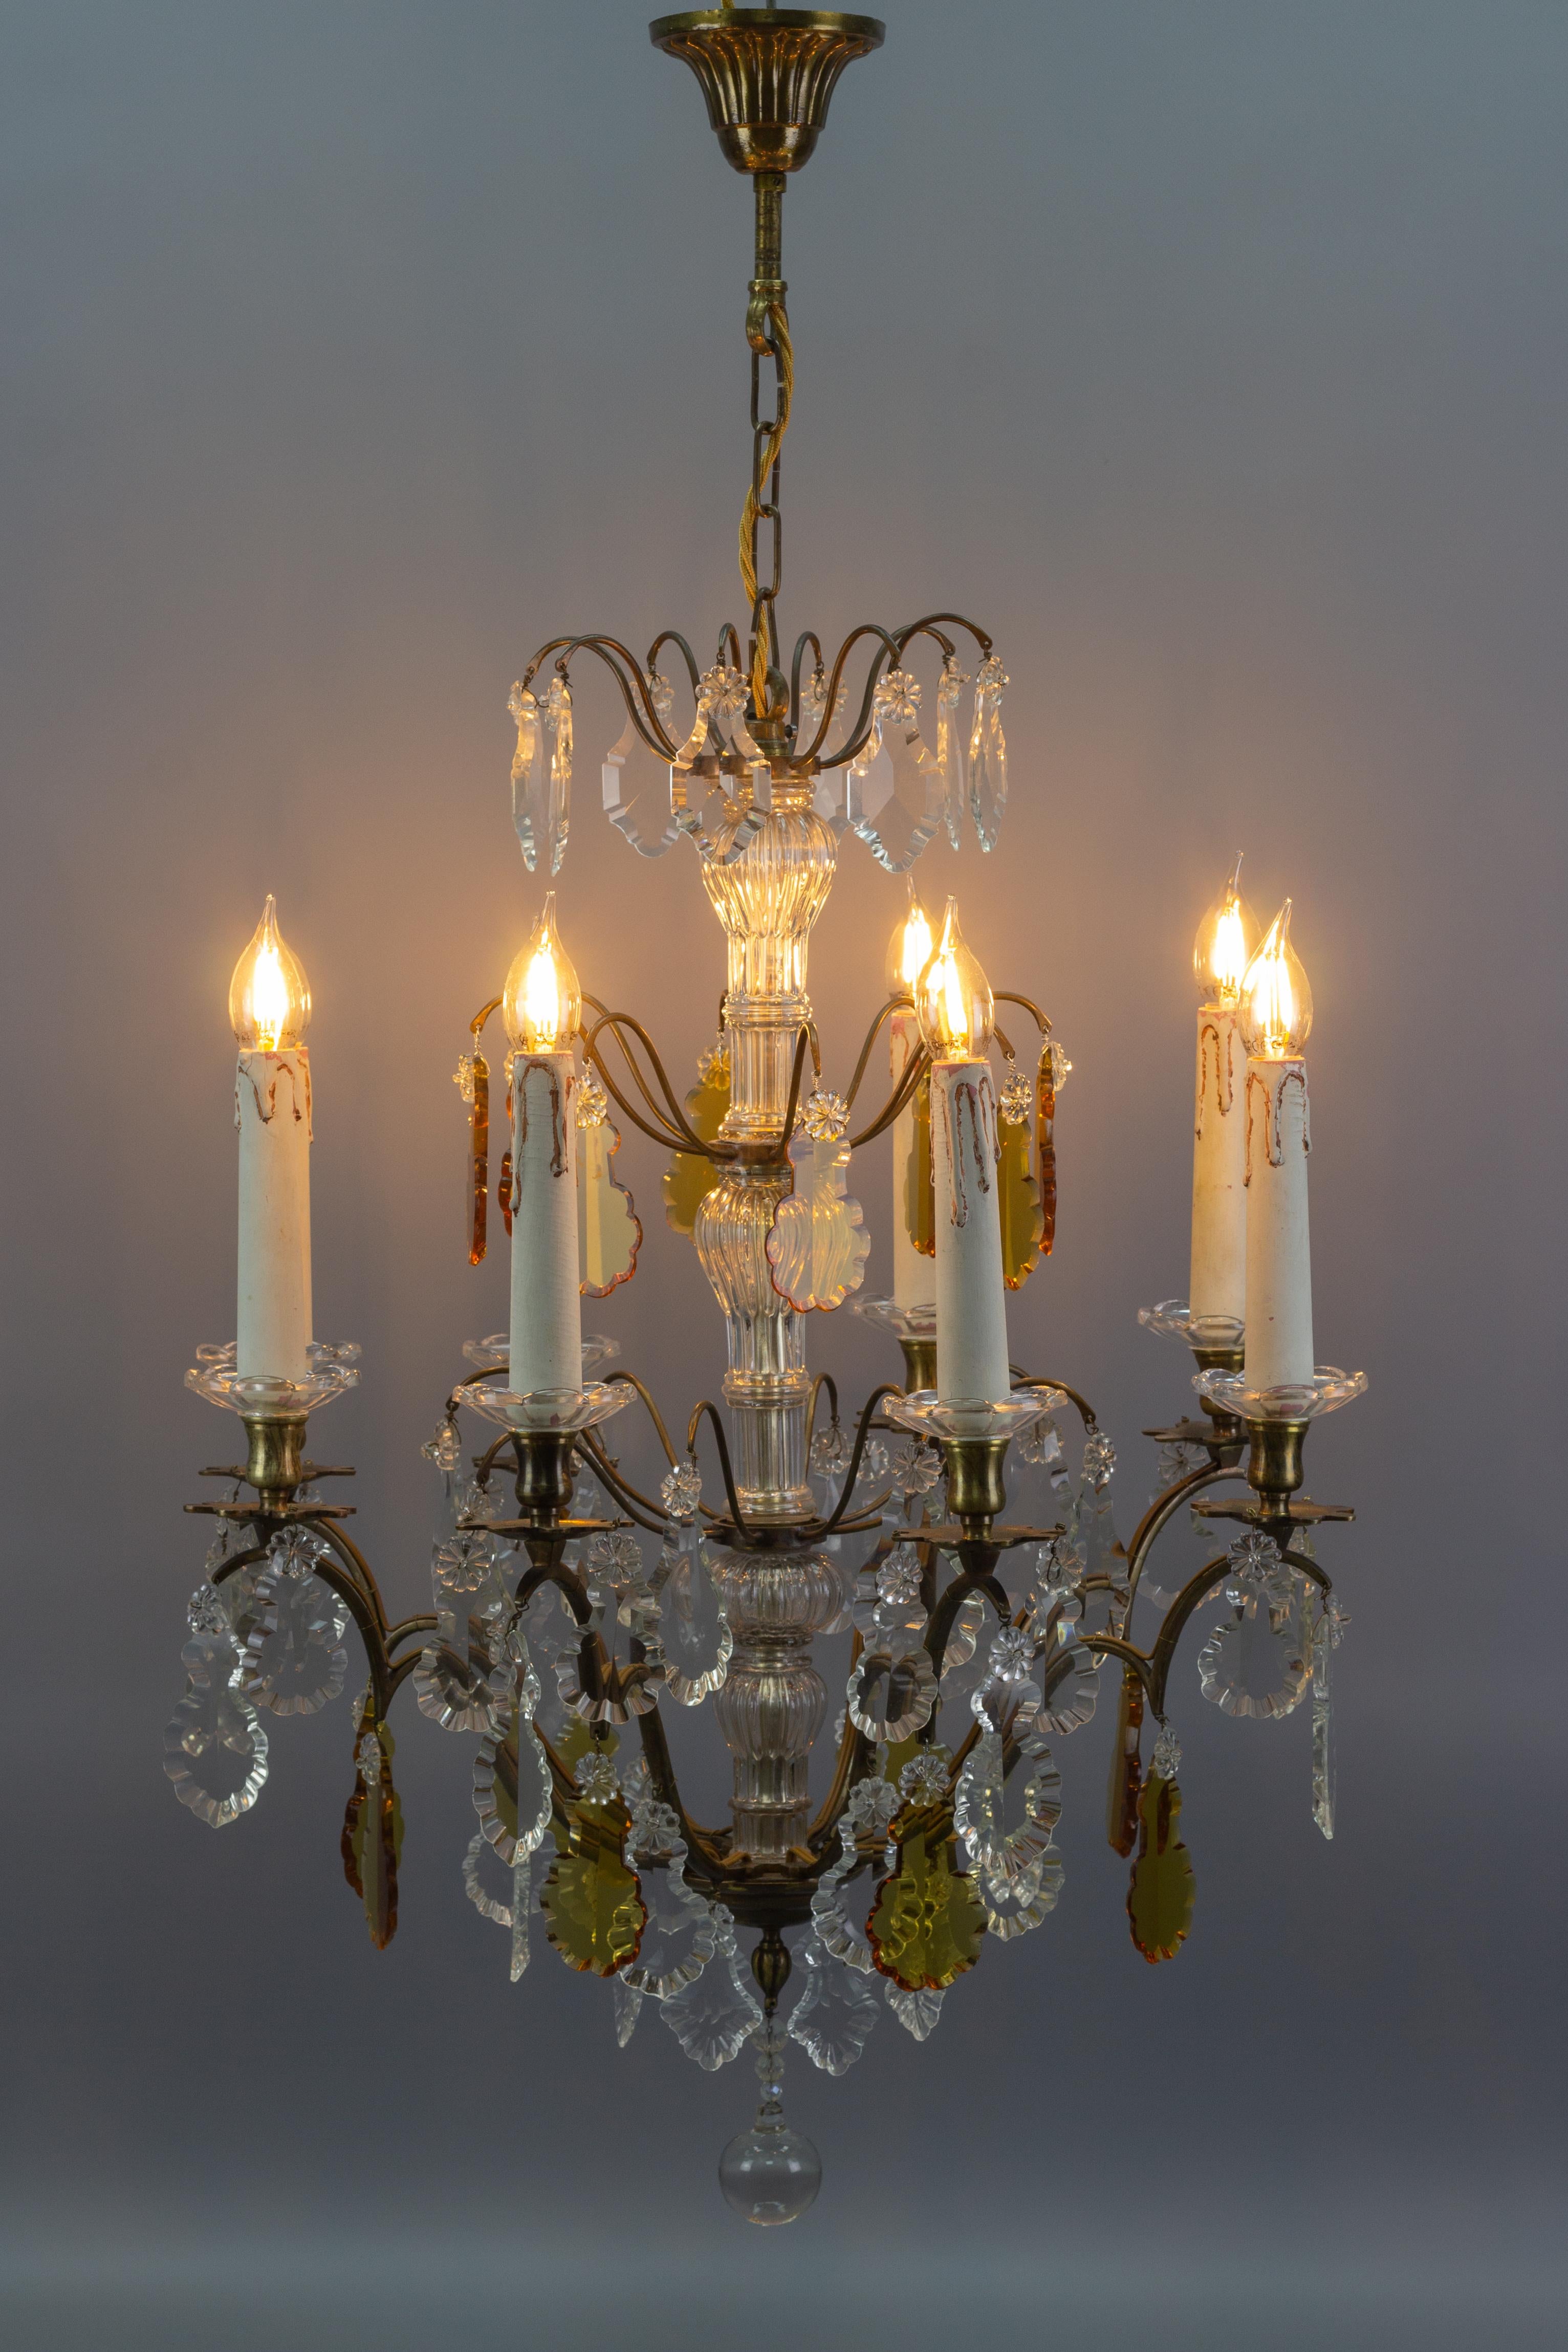 Superbe lustre de style Louis XVI en verre de cristal et laiton, fabriqué en France vers les années 1900. Conçu à l'origine pour 8 bougies, ce lustre ancien a été électrifié. Huit bras en laiton avec des bouchons en laiton et en verre en forme de